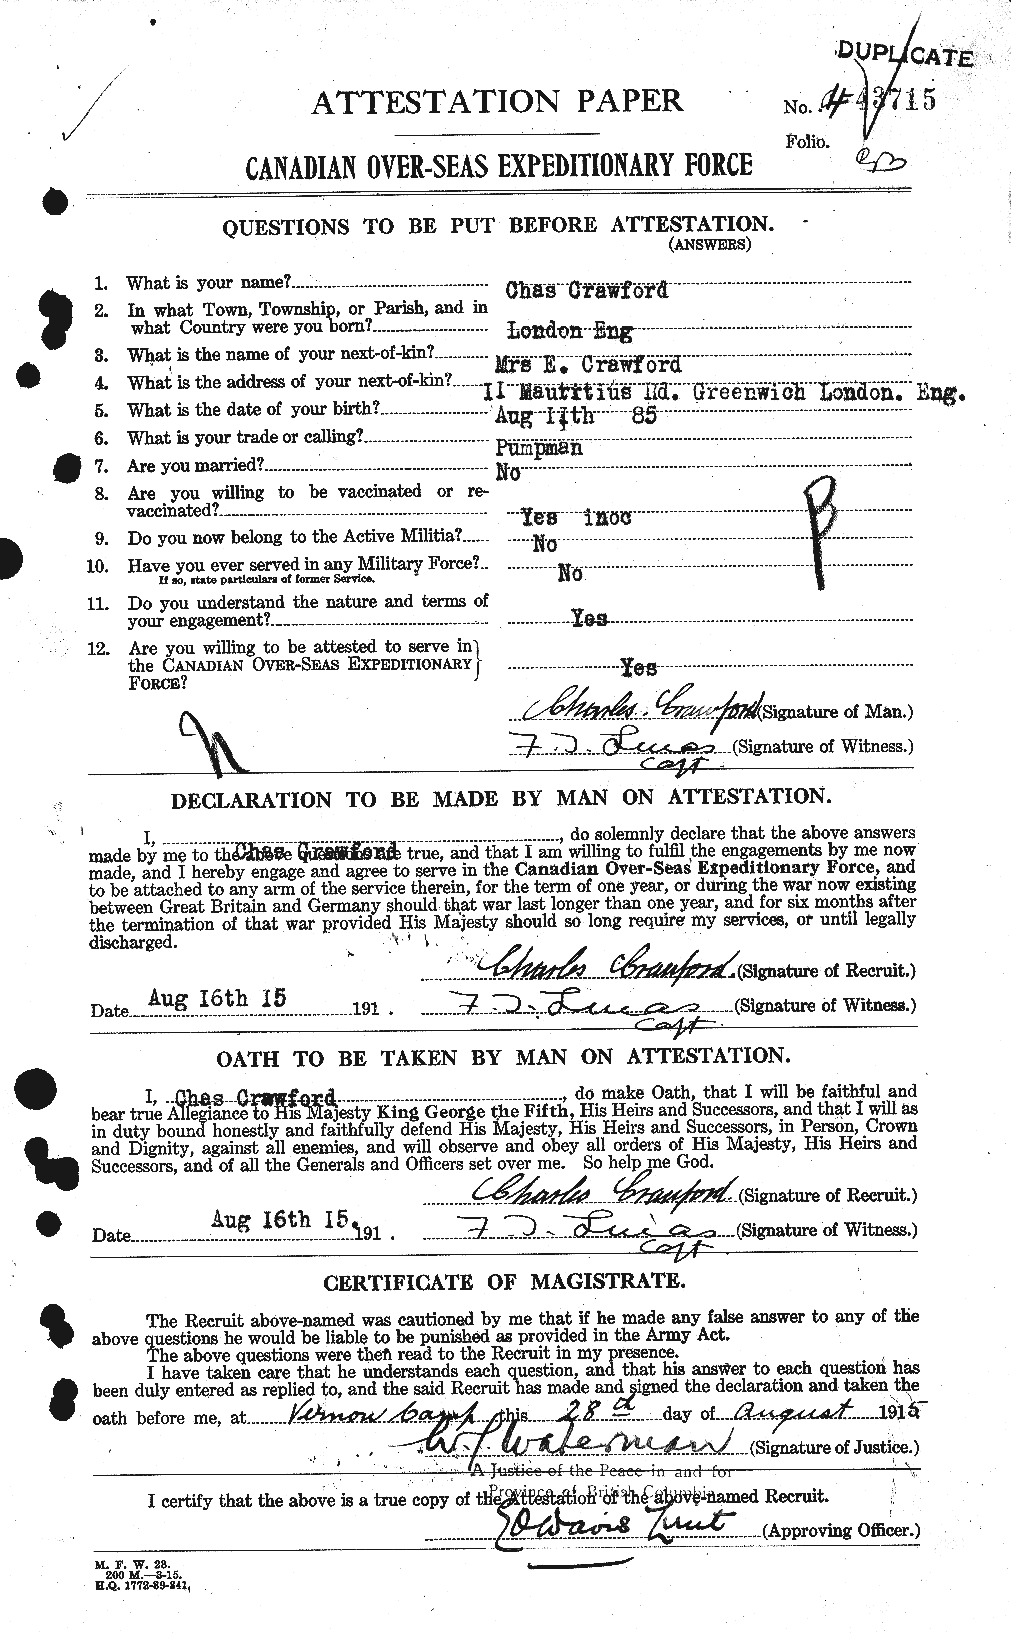 Dossiers du Personnel de la Première Guerre mondiale - CEC 060854a